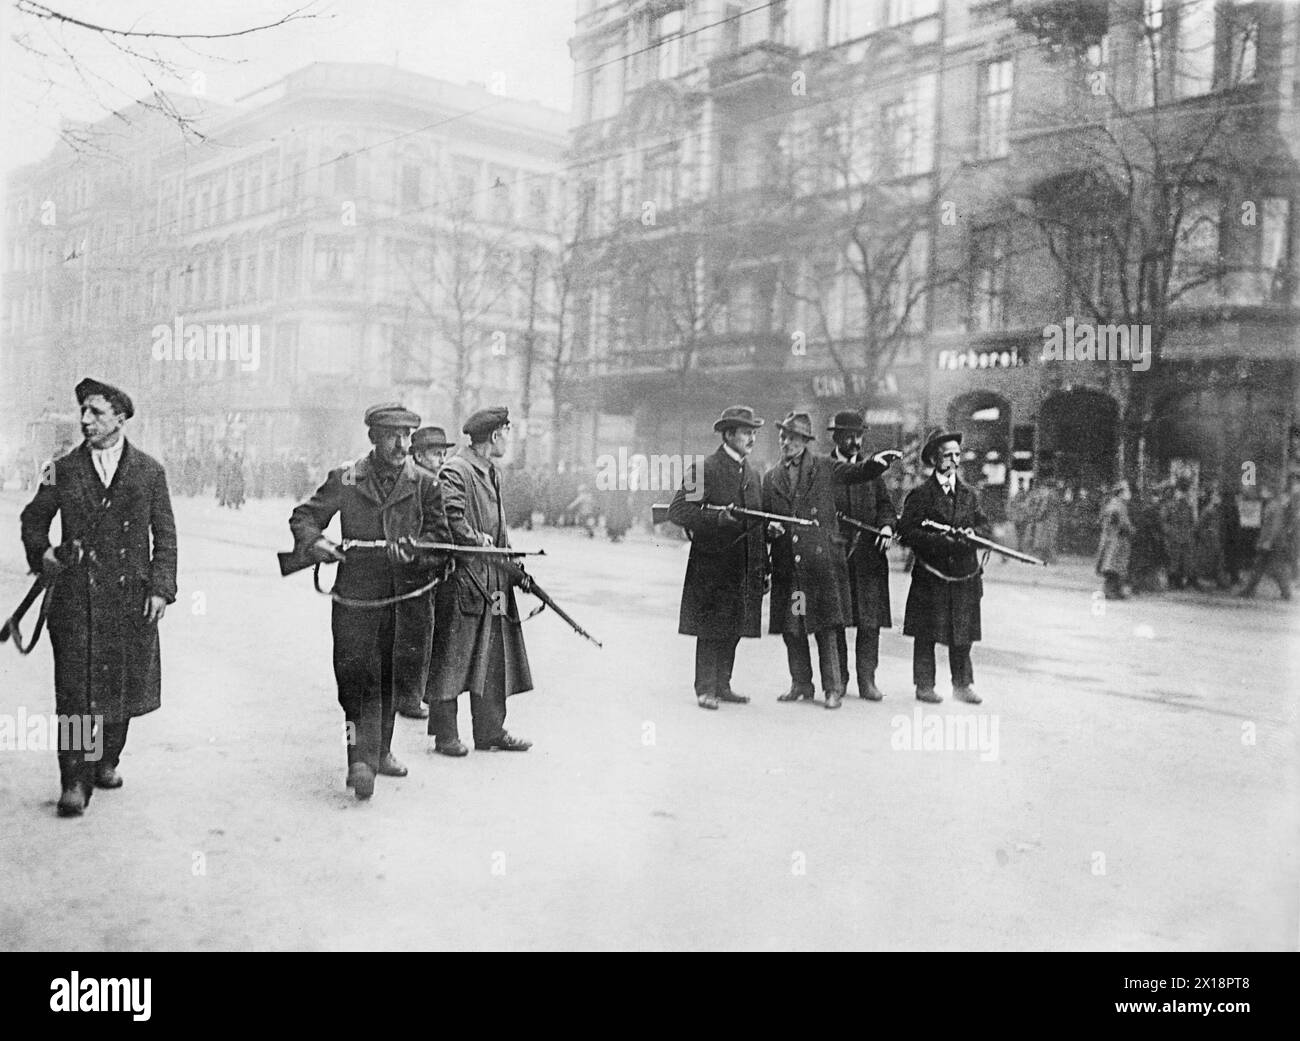 Rivoluzione tedesca - rivoluzionari armati tedeschi del movimento spartacista pattugliando strade a Berlino, Germania dopo la fine della prima guerra mondiale ca. 1919 Foto Stock